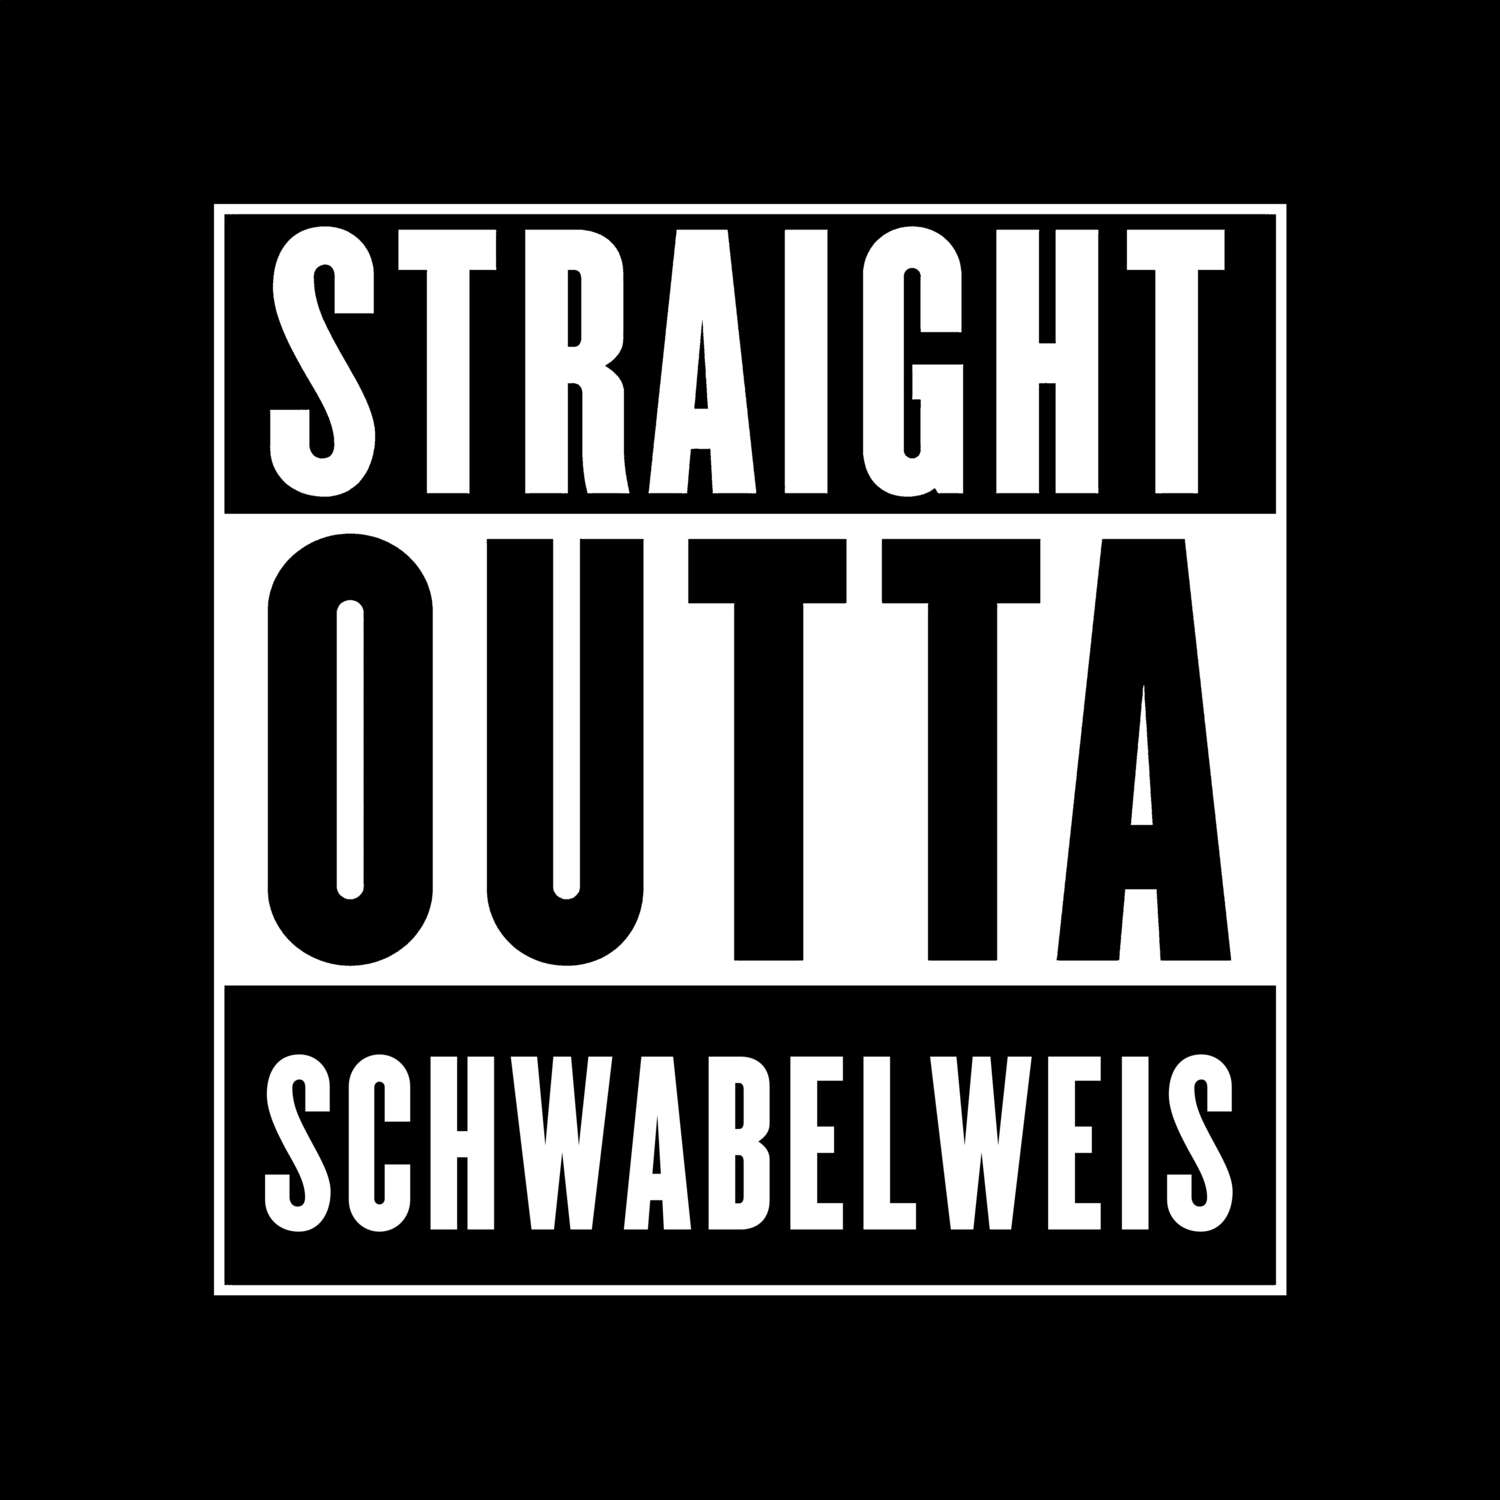 Schwabelweis T-Shirt »Straight Outta«